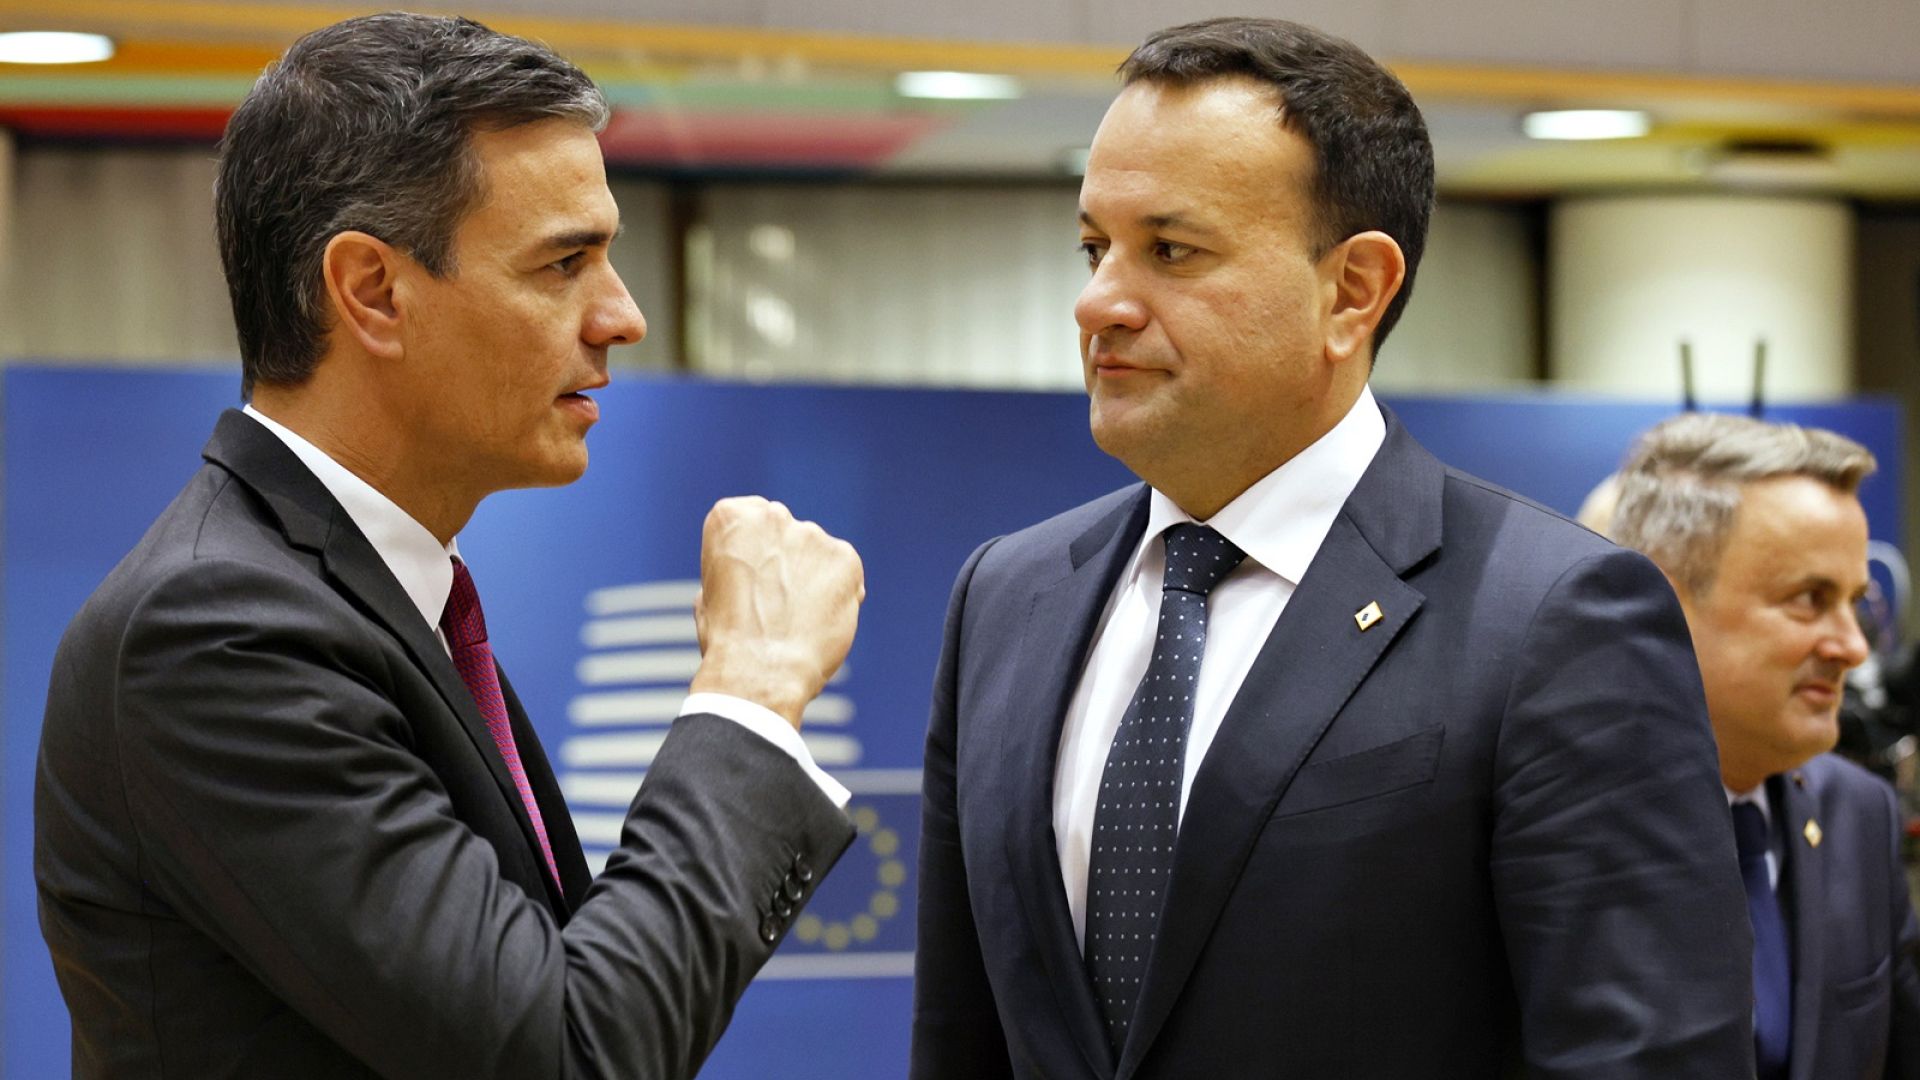 İspanya ve İrlanda: AB-İsrail Ortaklık Anlaşması acilen gözden geçirilmeli